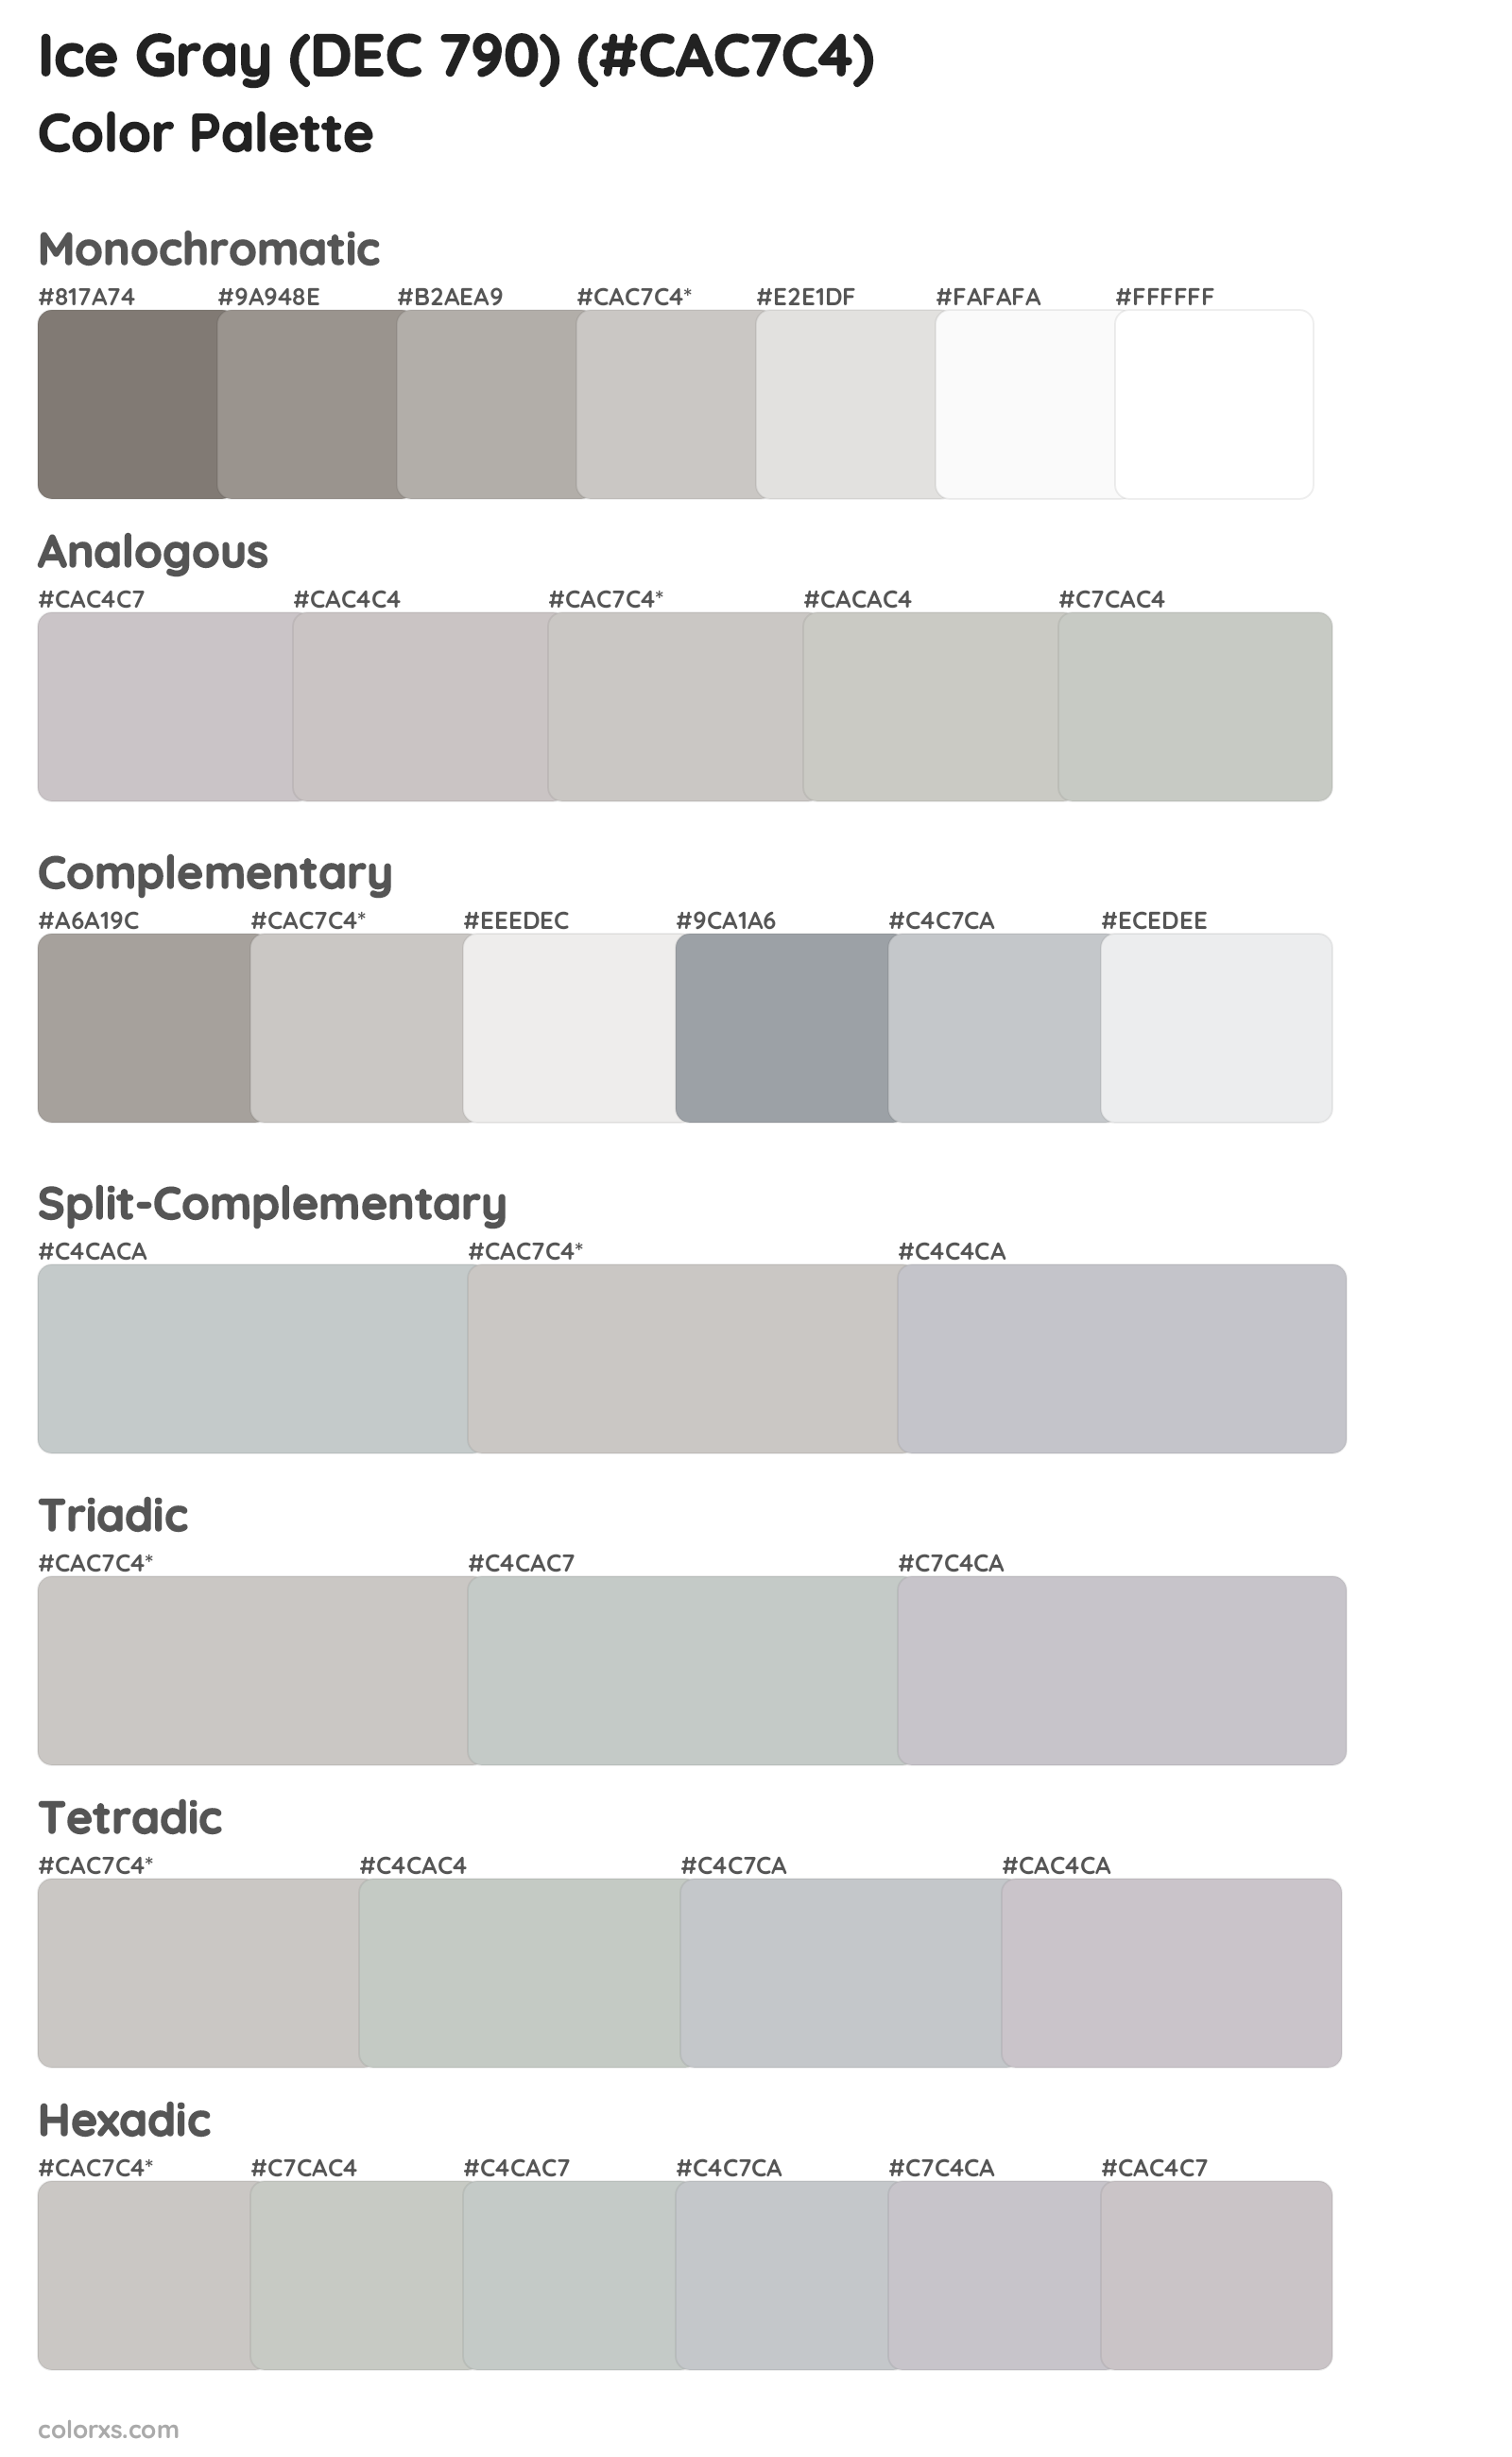 Ice Gray (DEC 790) Color Scheme Palettes